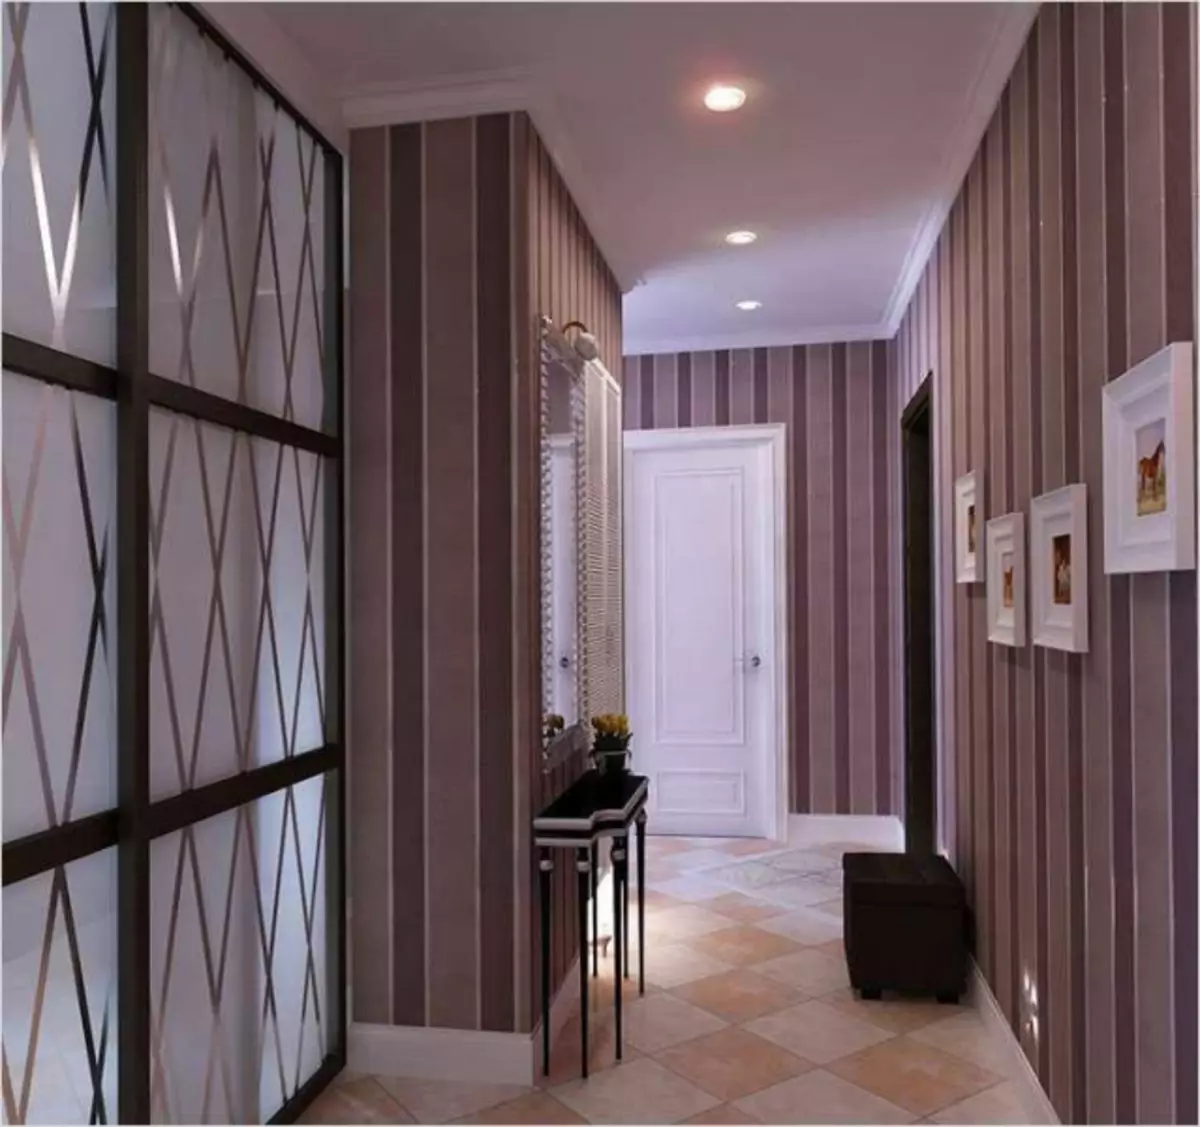 Tapety w korytarzu w apartamencie 2019: Dla korytarza, projektowania, nowoczesnych pomysłów wnętrz, modne, co iść, opcje, płyn w małych, wideo